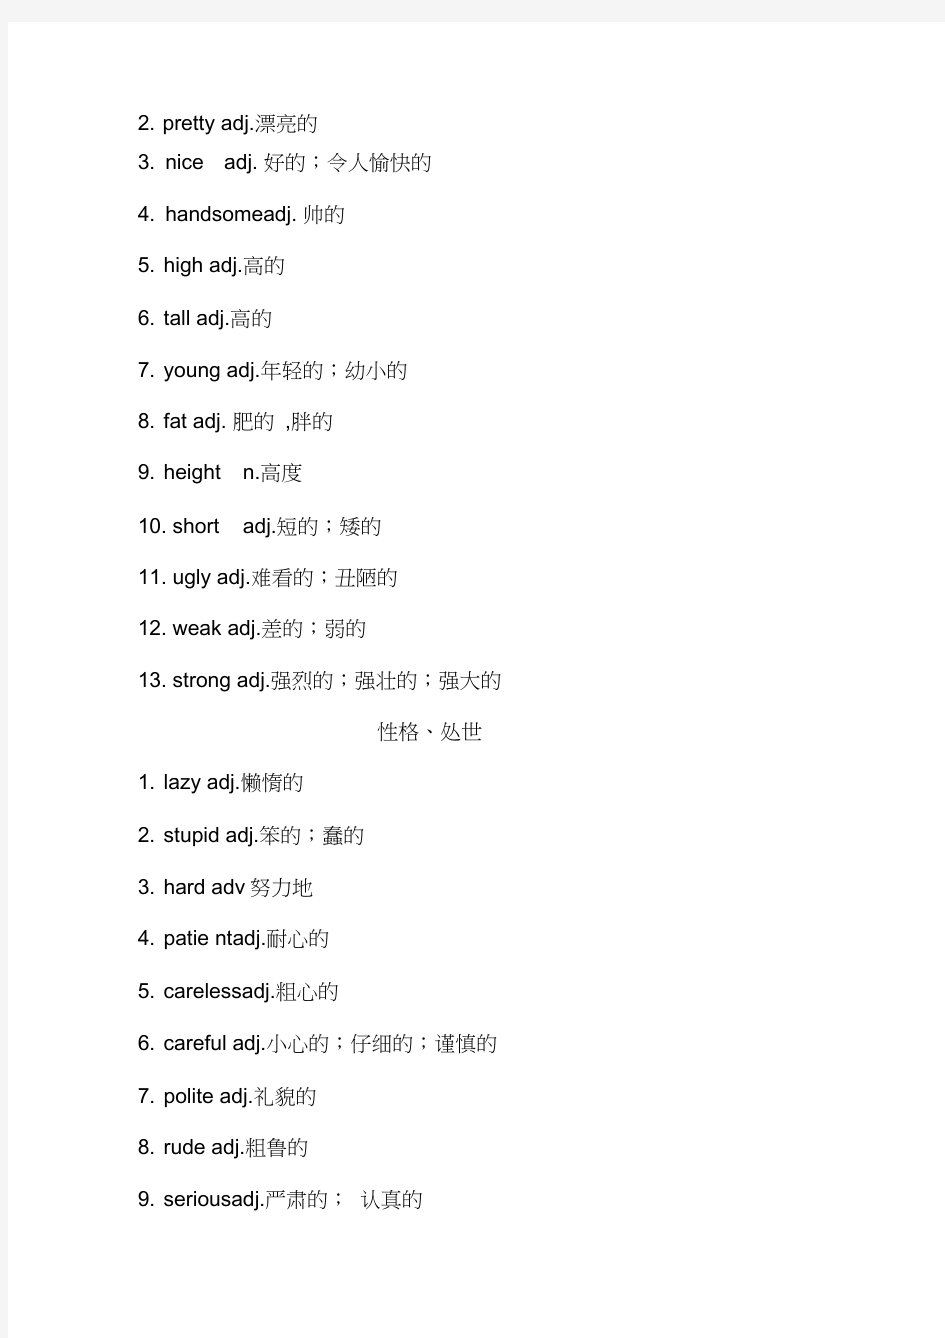 中考英语28天话题词汇单词分类速记表